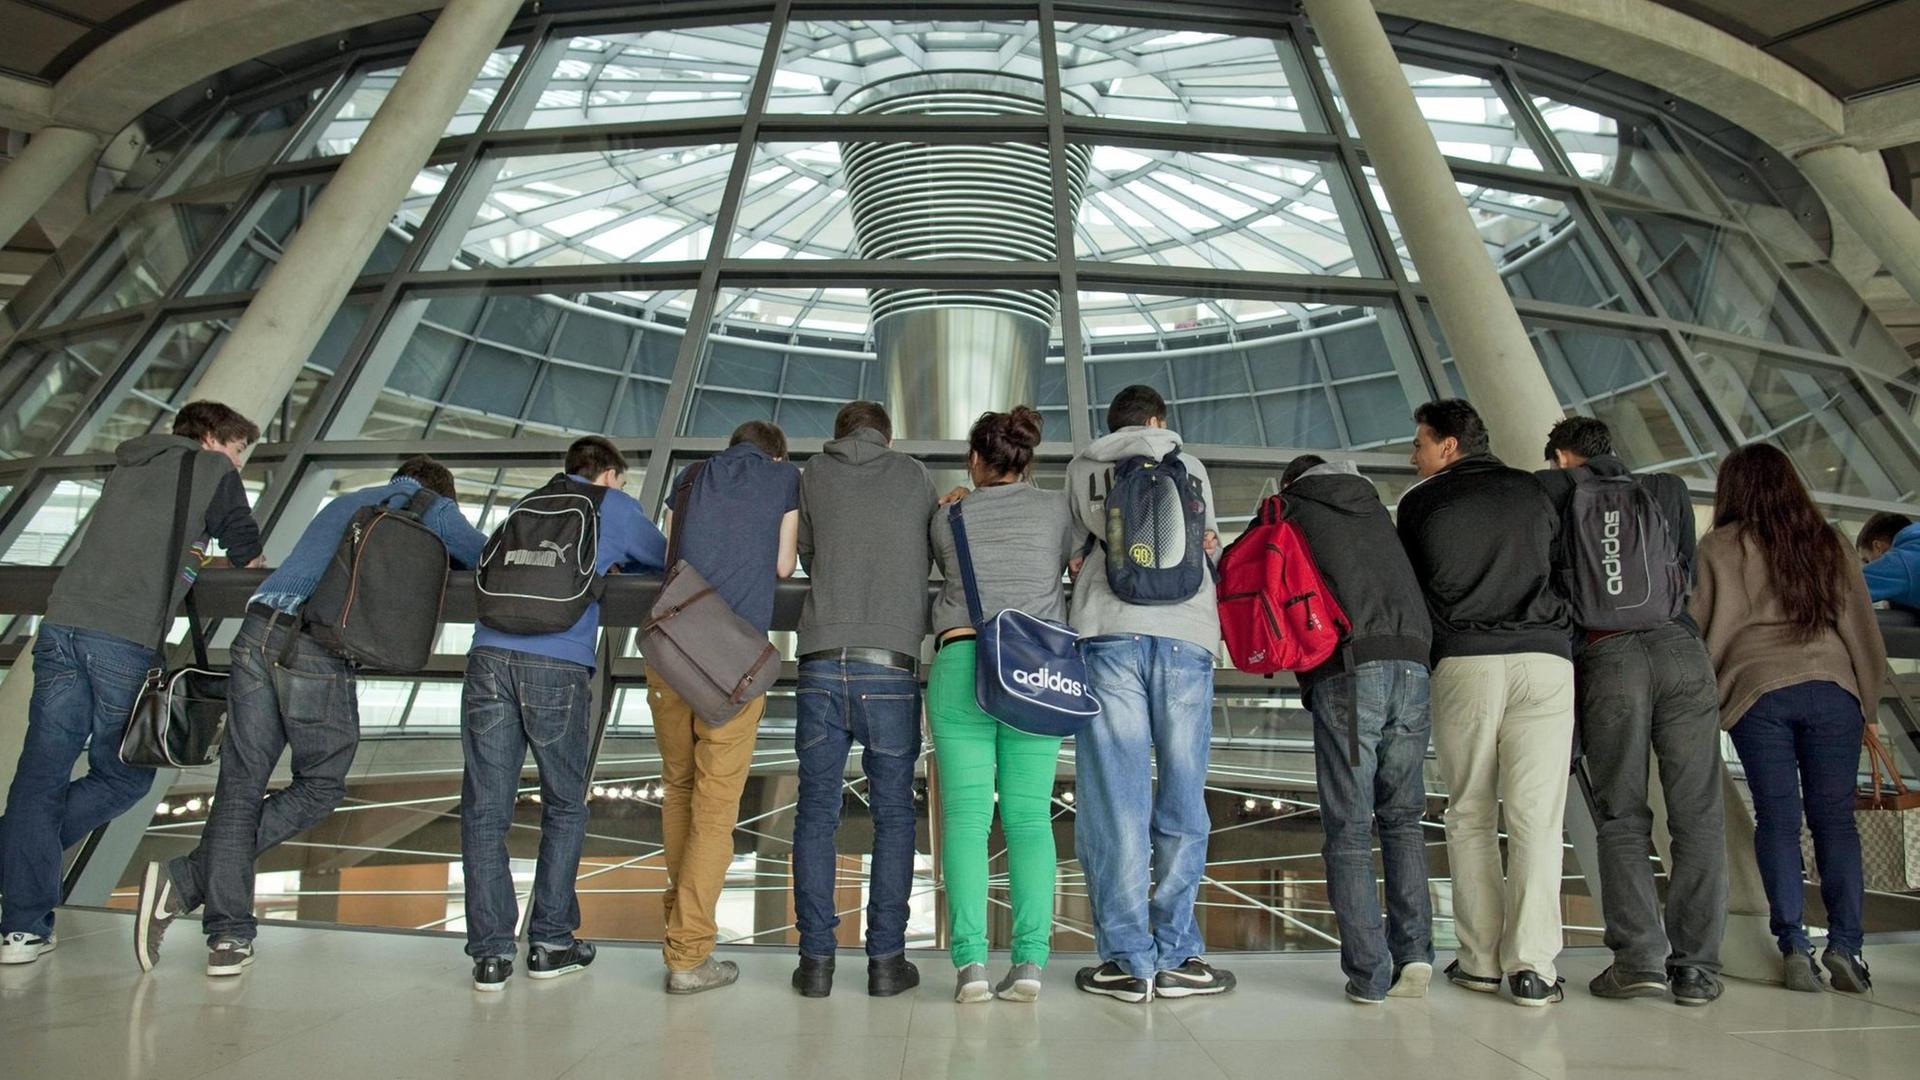 Jugendliche während einer Führung auf der Fraktionsebene im Reichstag Berlin, aufgenommen 2012